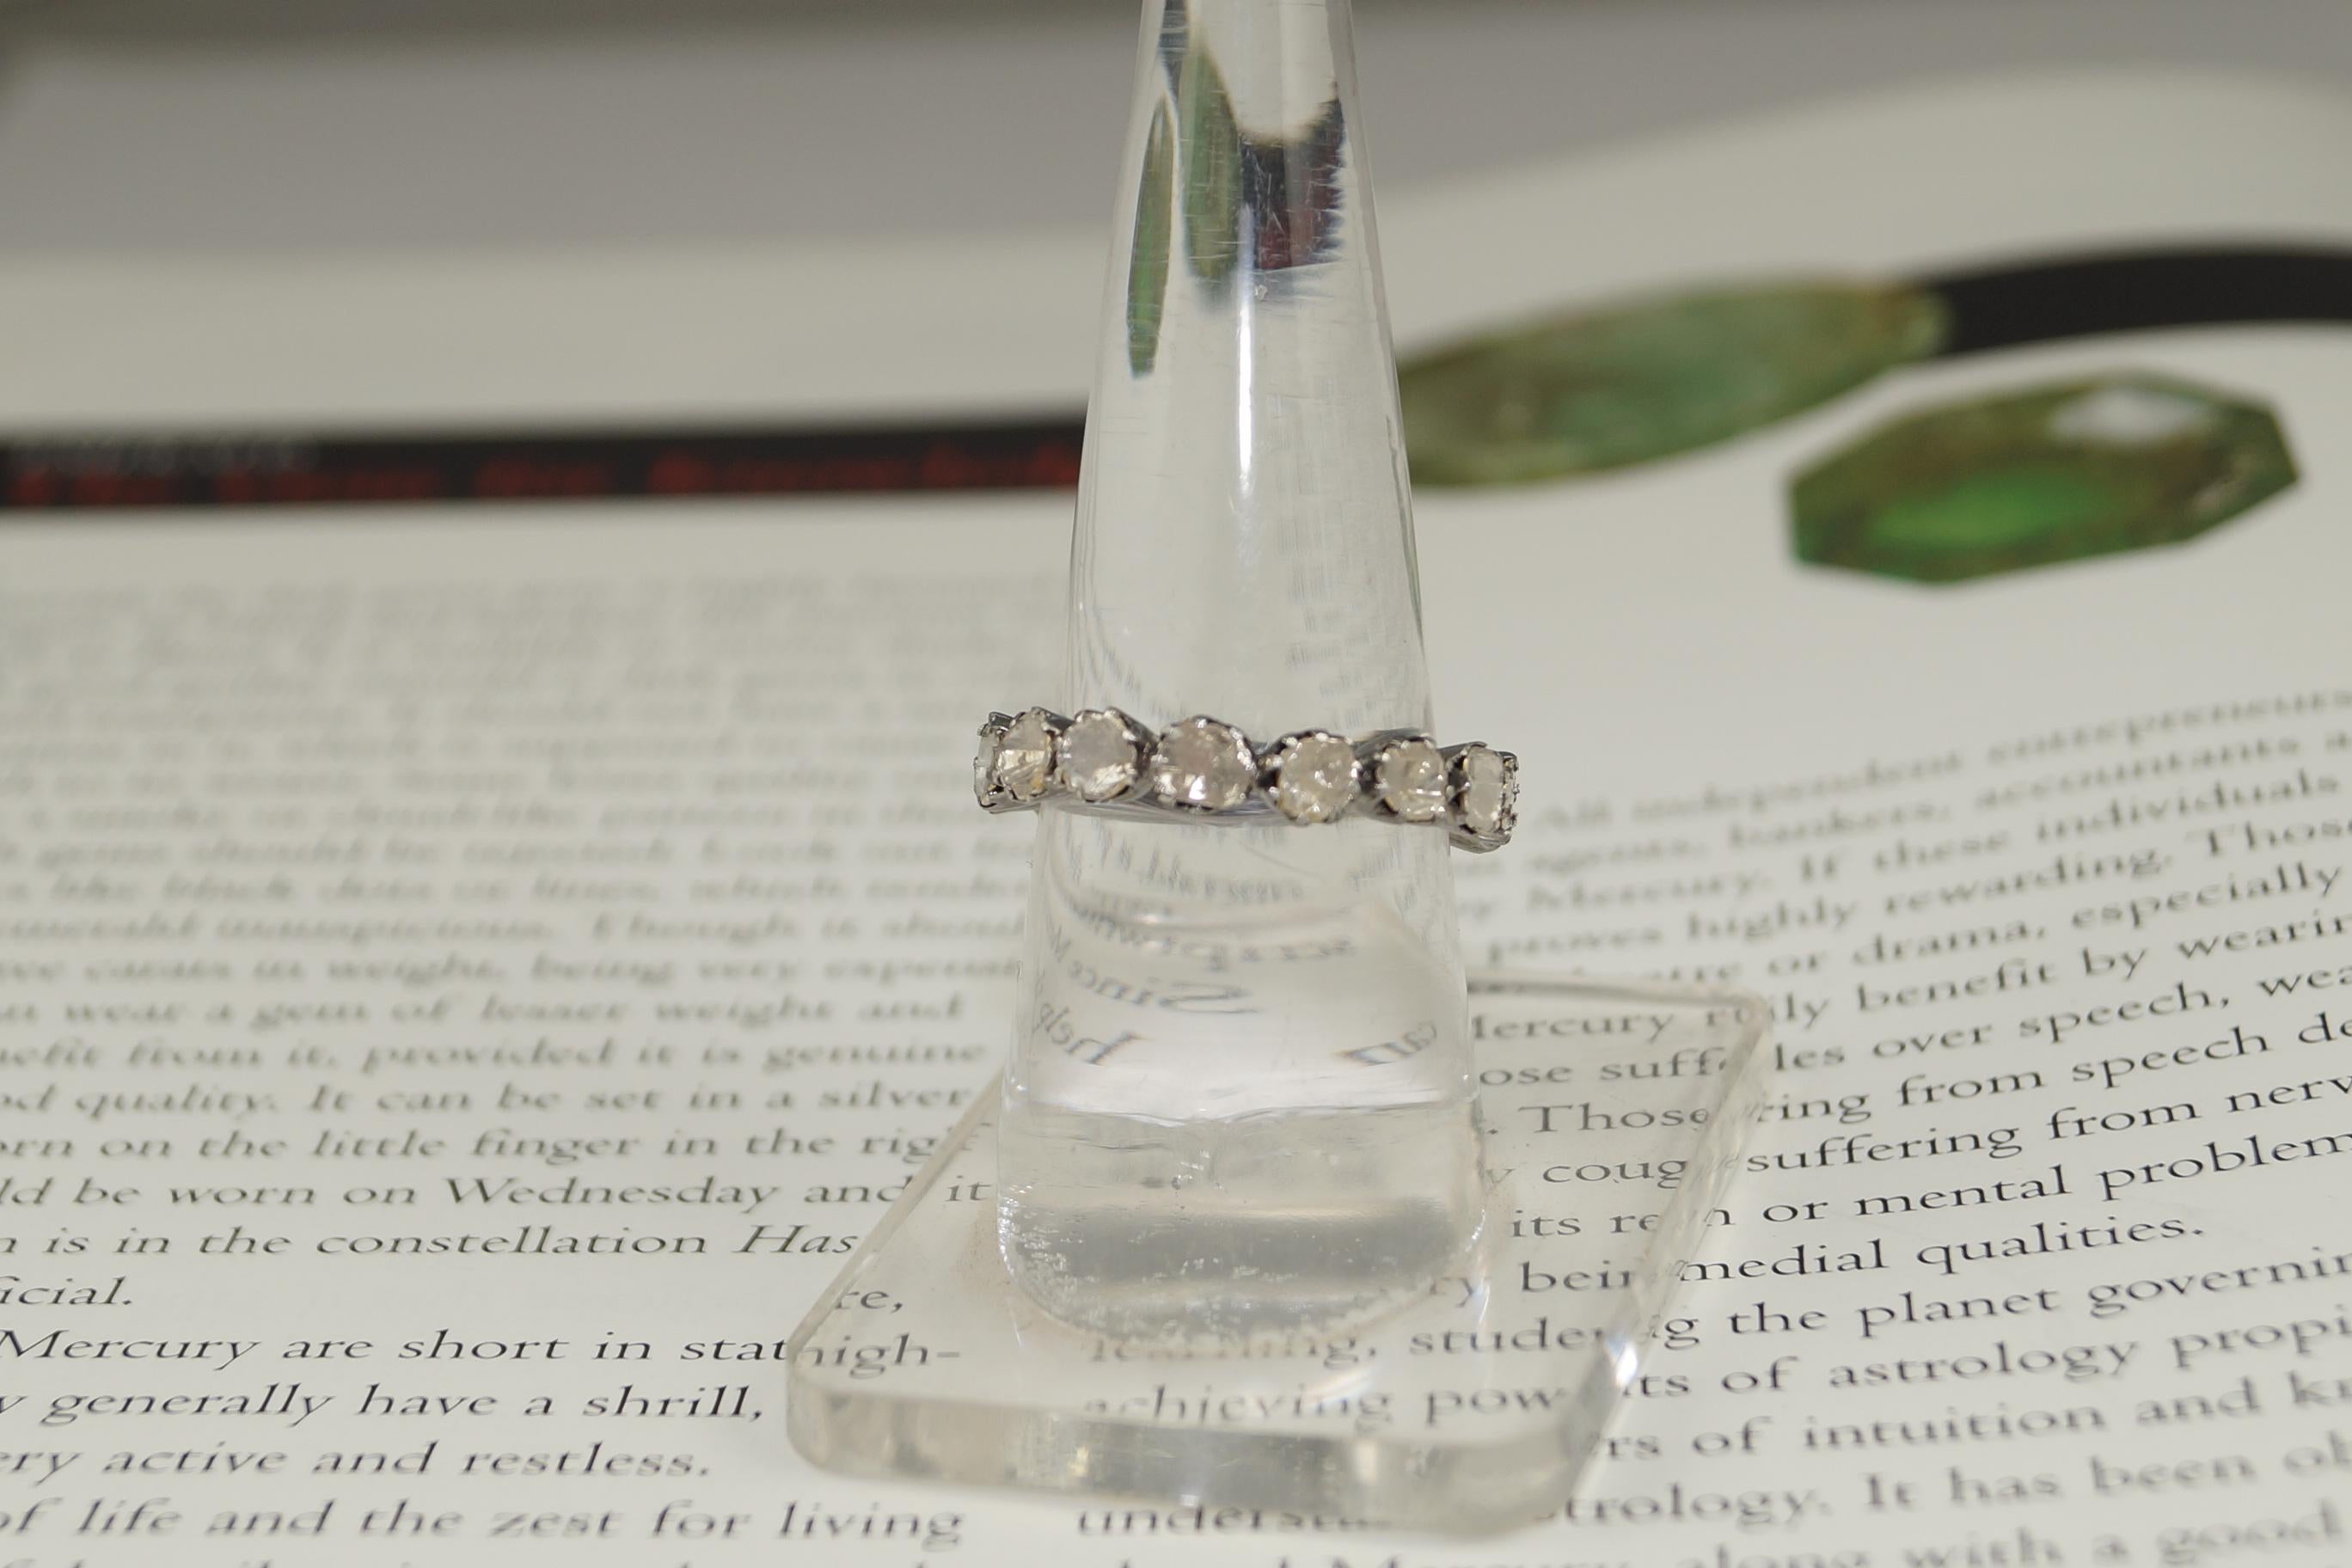 Ce magnifique anneau d'éternité se compose des éléments suivants :
Diamants - diamants bruts
Poids du diamant - 2,30cts
Couleur du diamant- Blanc avec une teinte de jaune et de brun
Métal- Argent
Pureté - Argent sterling ou 92,5 % d'argent
Taille de